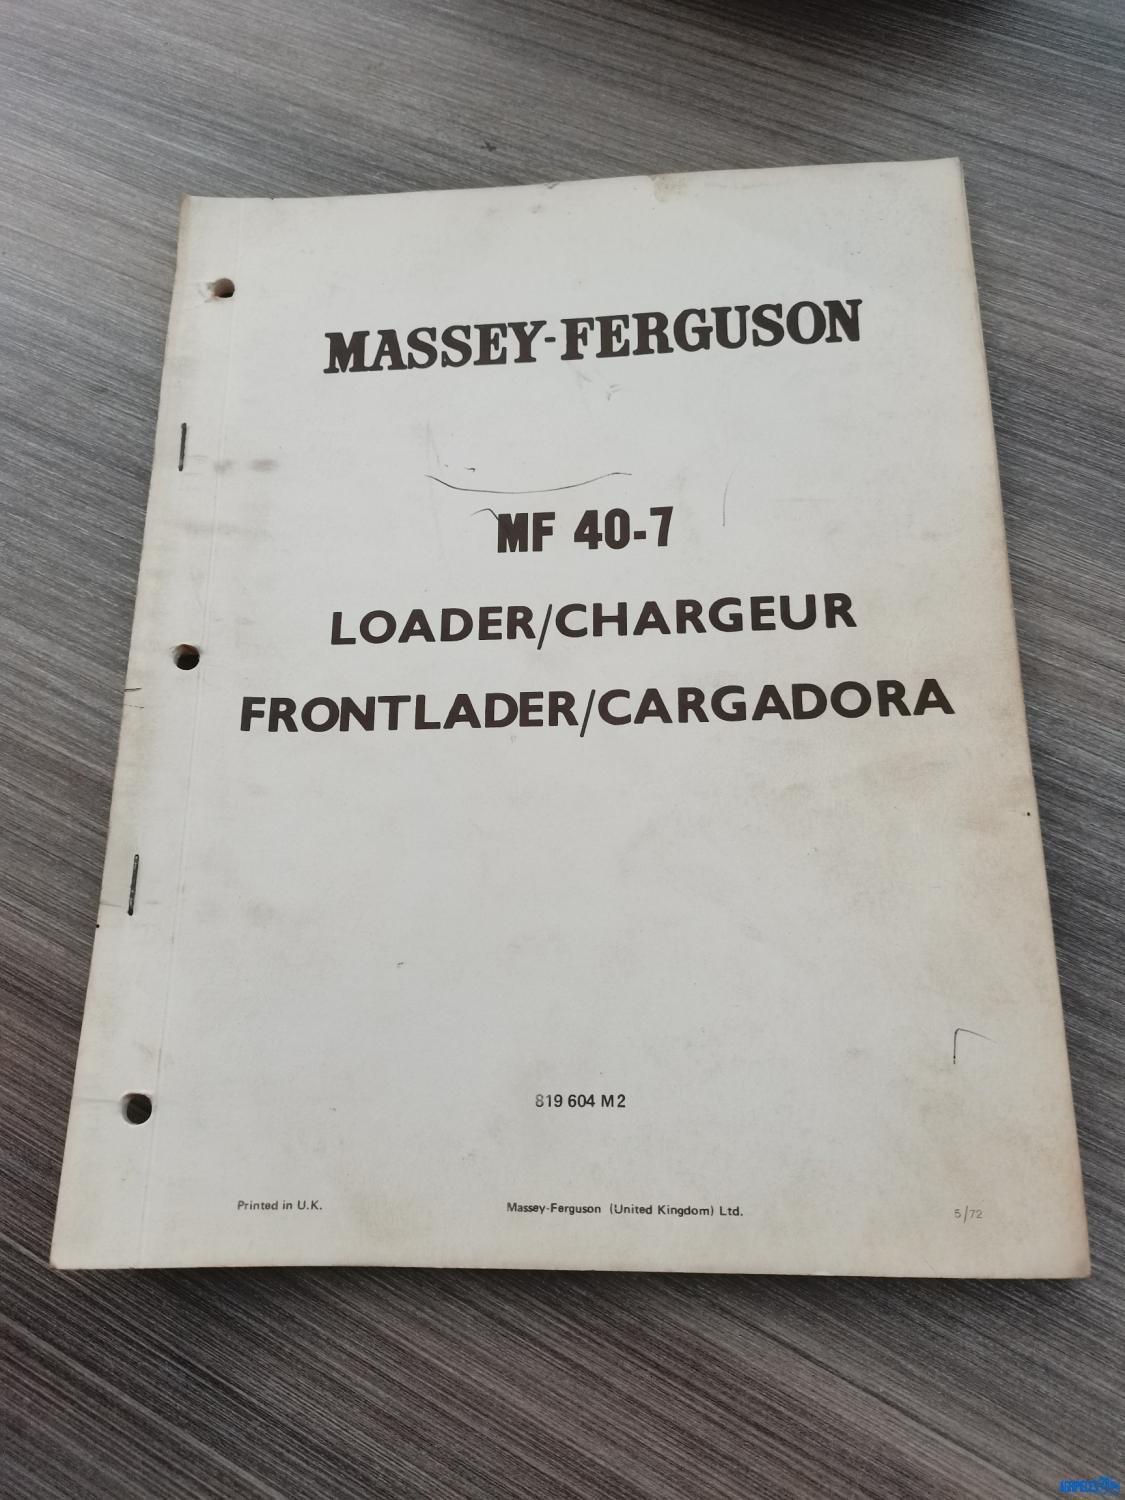 Catalogue de pièces détachées pour chargeur Massey-Ferguson 40-7